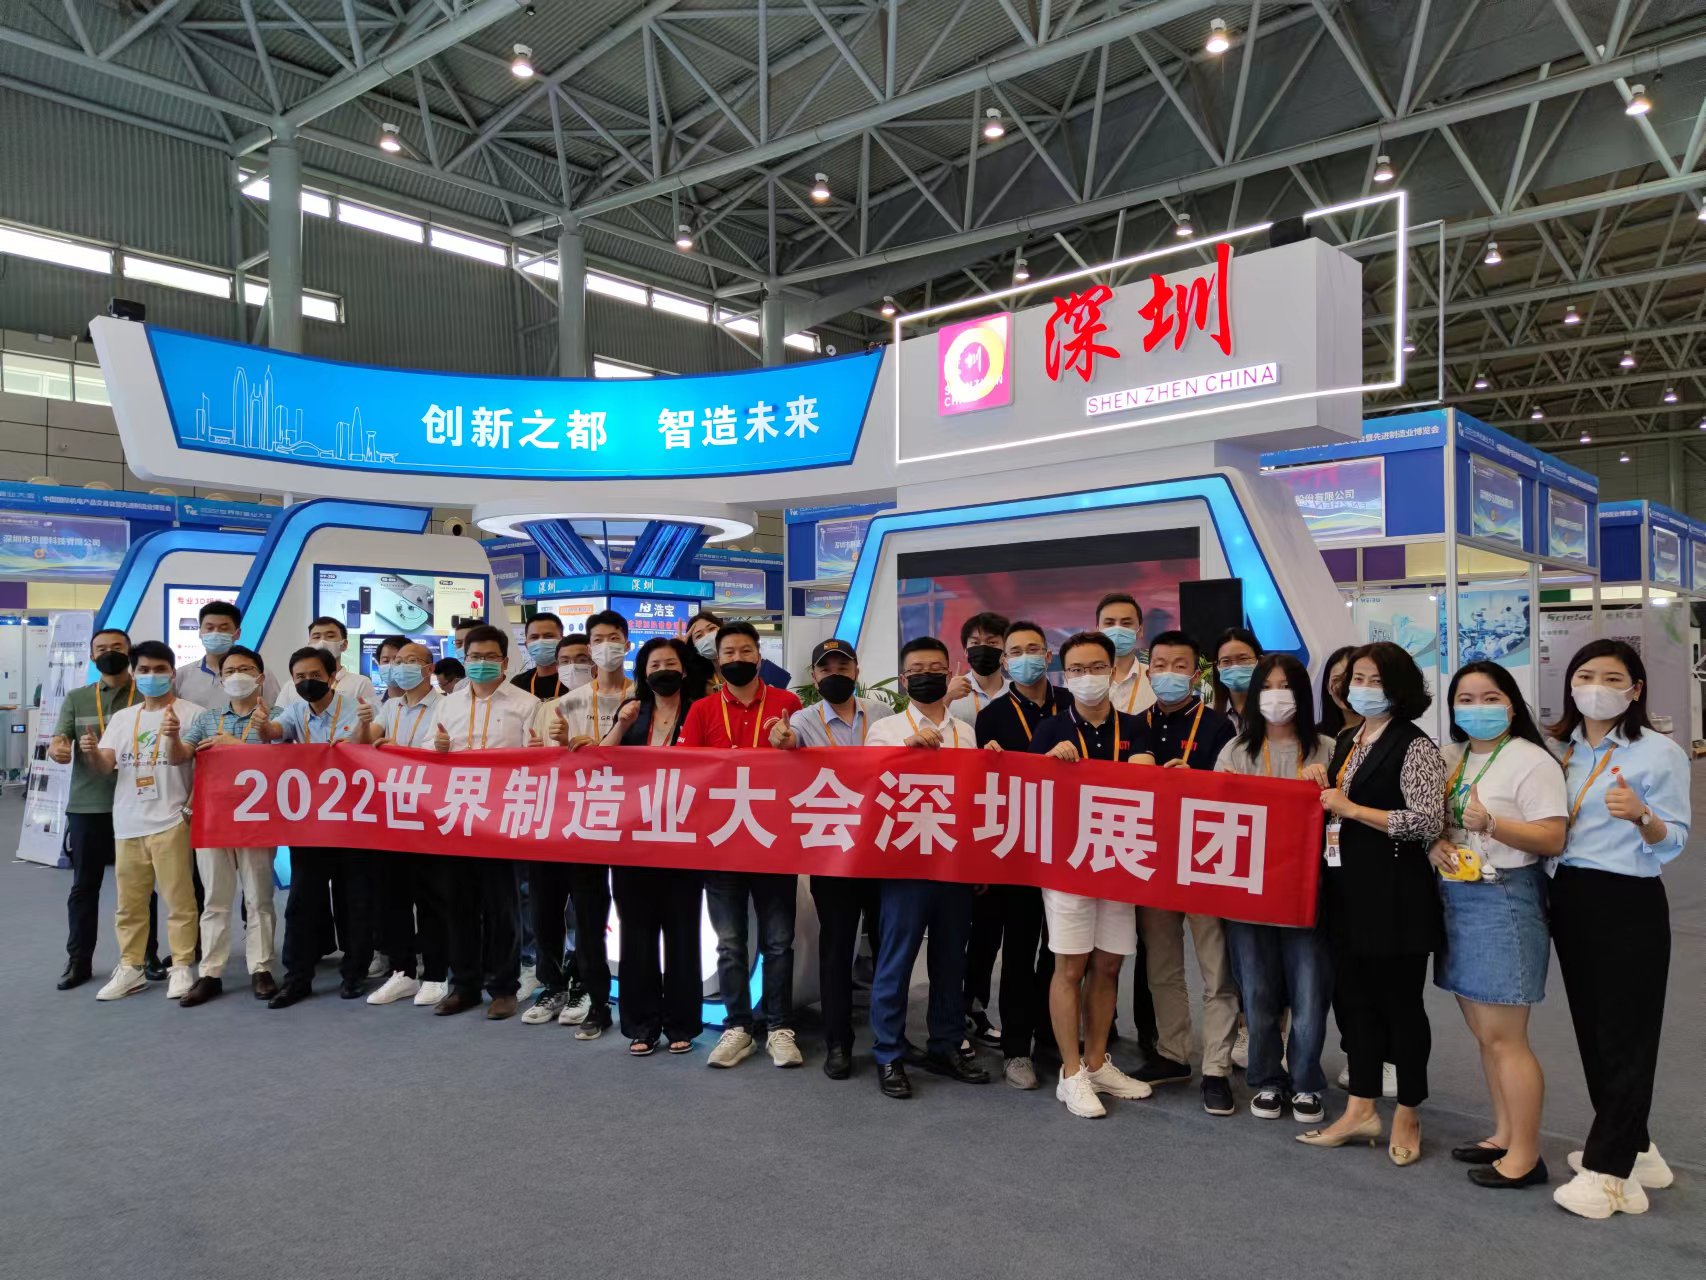 mg555娱乐娱城科技随深圳展团参加2022世界制造业大会